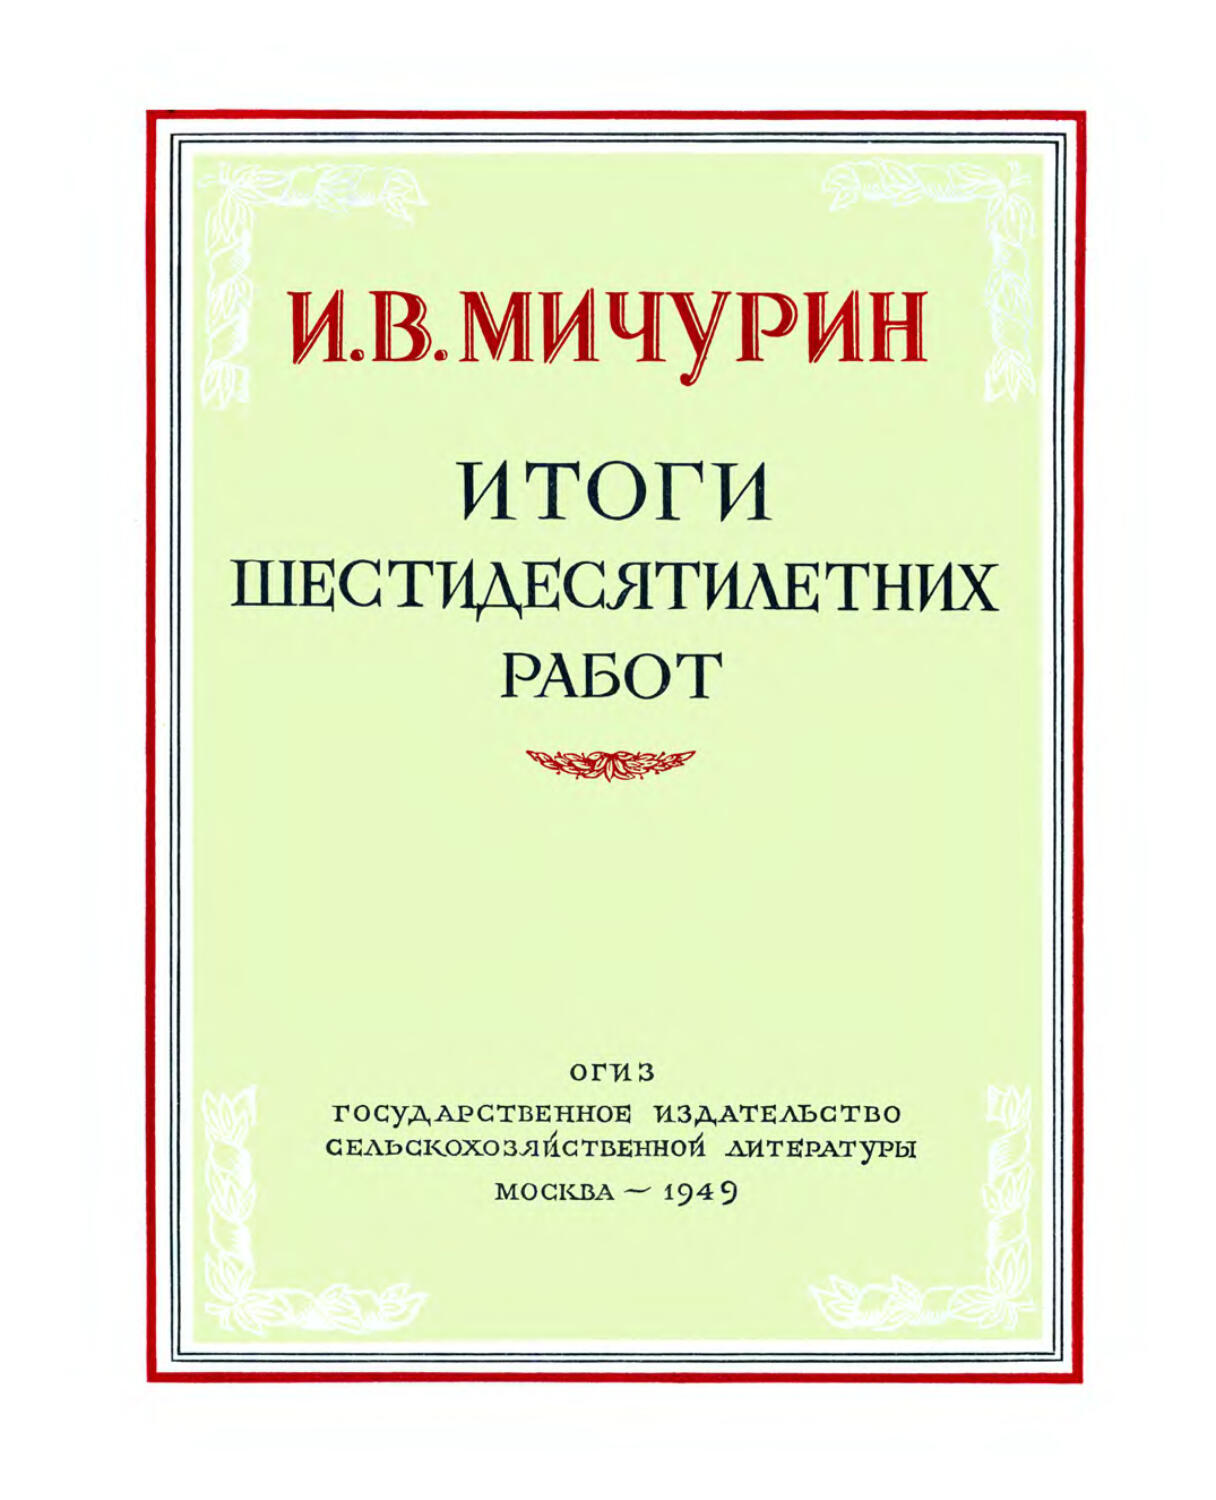 5-е изд; 1949 г.